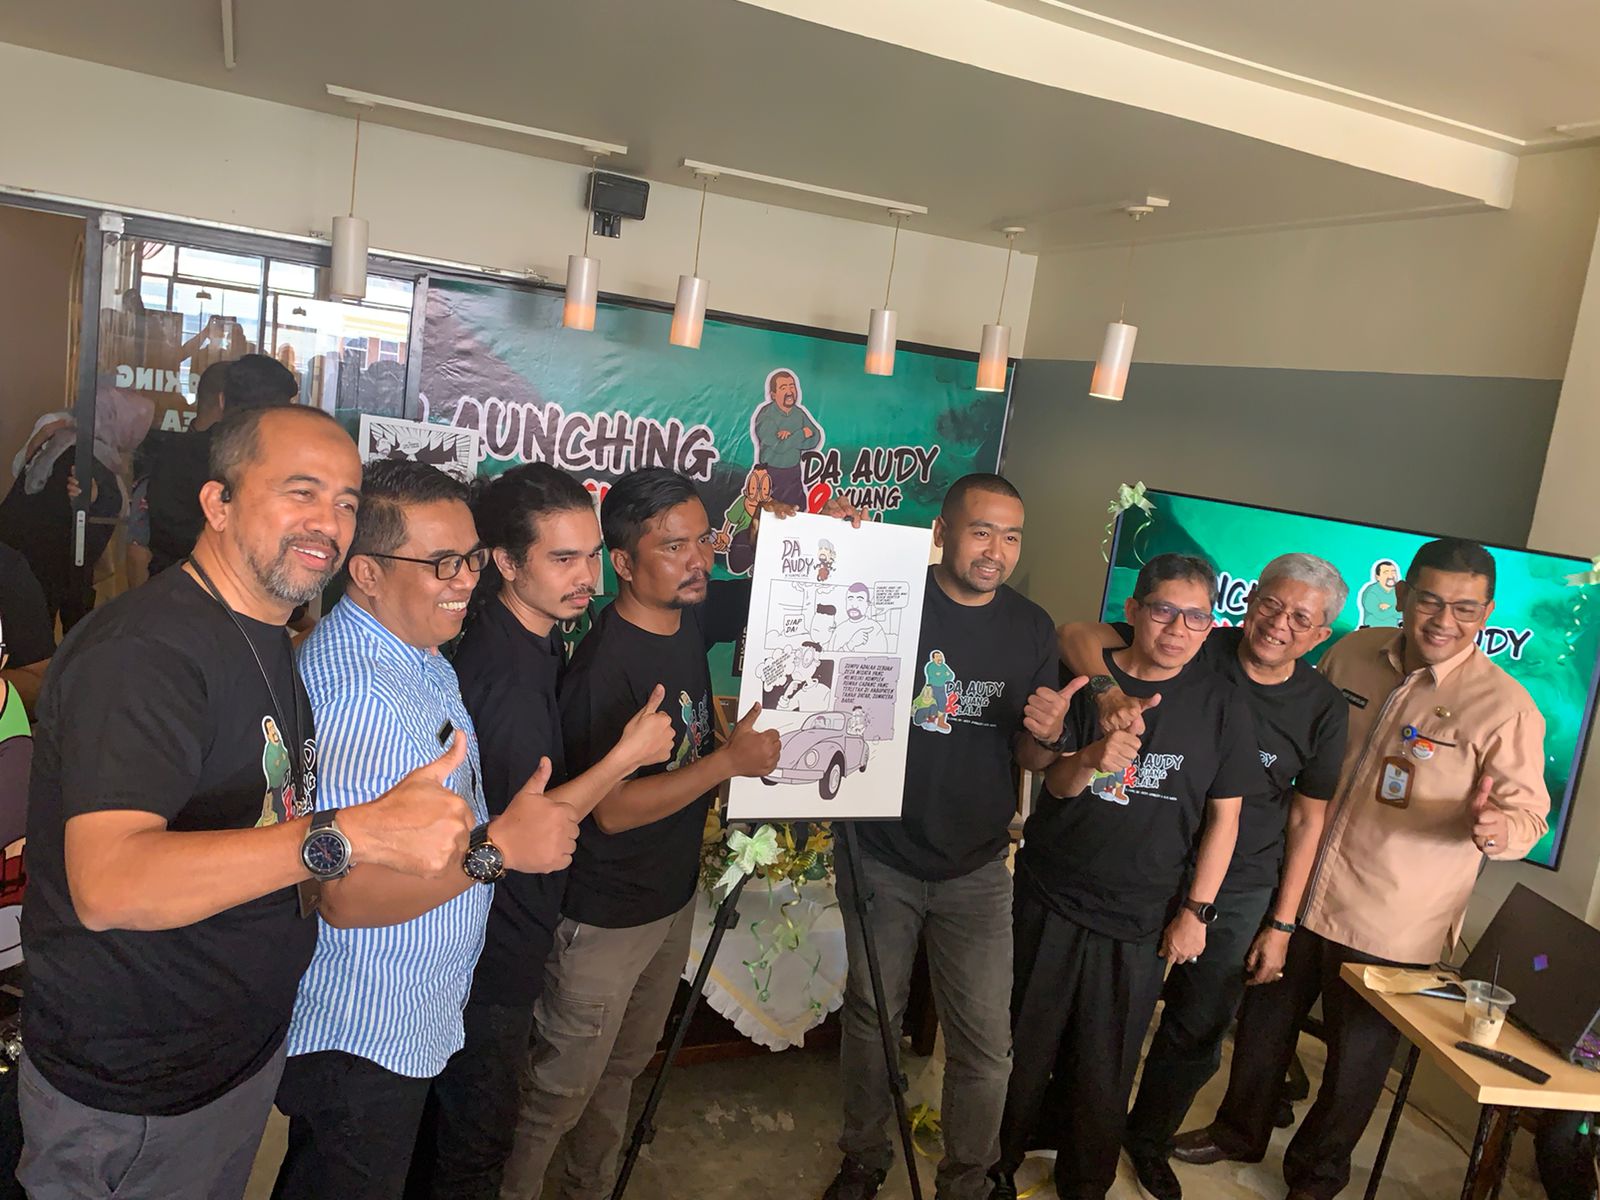 Kenalkan Sumatera Barat Lewat Komik, Wagub Sumbar Luncurkan "Da Audy dan Yuang Lala"